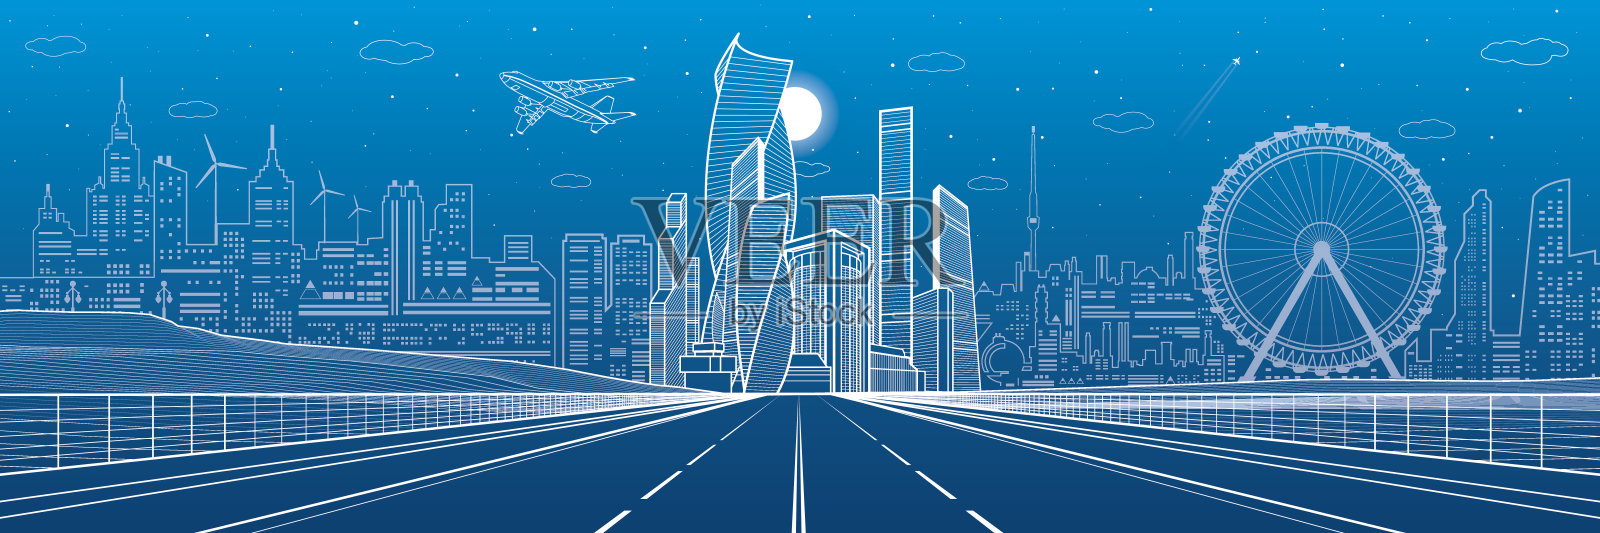 宽阔的公路。城市基础设施全景图，未来城市背景，现代建筑。飞机飞行。蓝色背景上的白线，夜景，矢量设计艺术插画图片素材